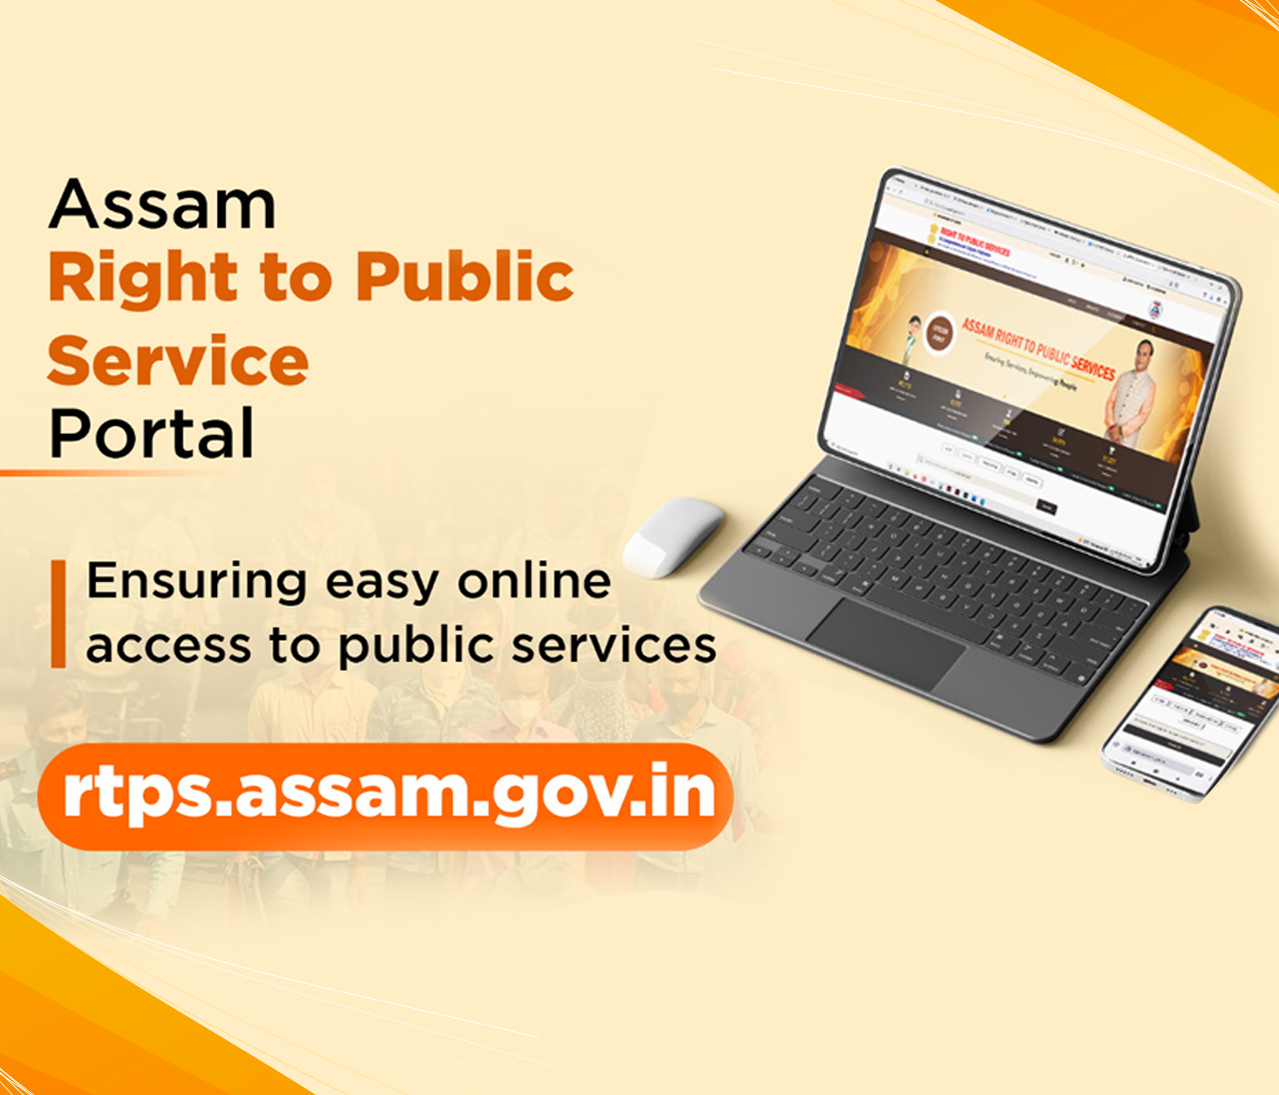 Assam Right to Public Service Portal